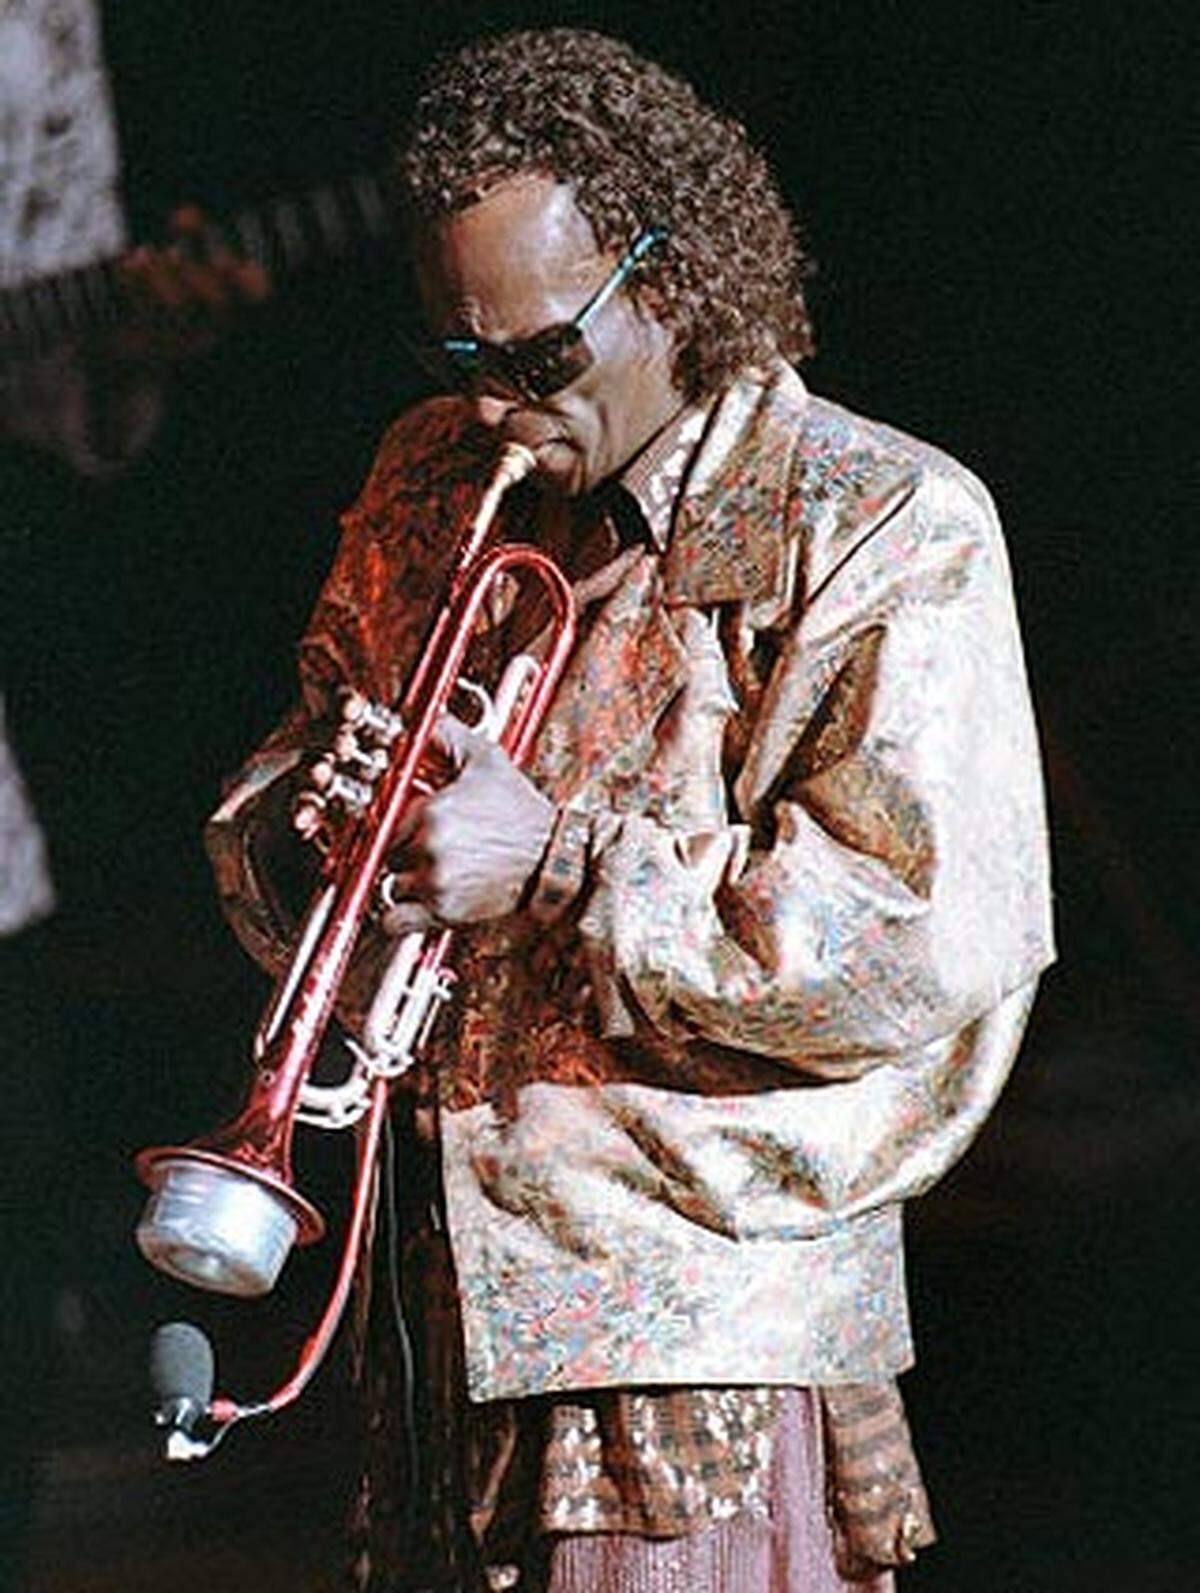 Ende der sechziger Jahre nahm Miles Davis den progressiven Österreicher in seine Band auf und nahm mit ihm einige wegweisende Platten auf, darunter "In a Silent Way" und "Bitches Brew".